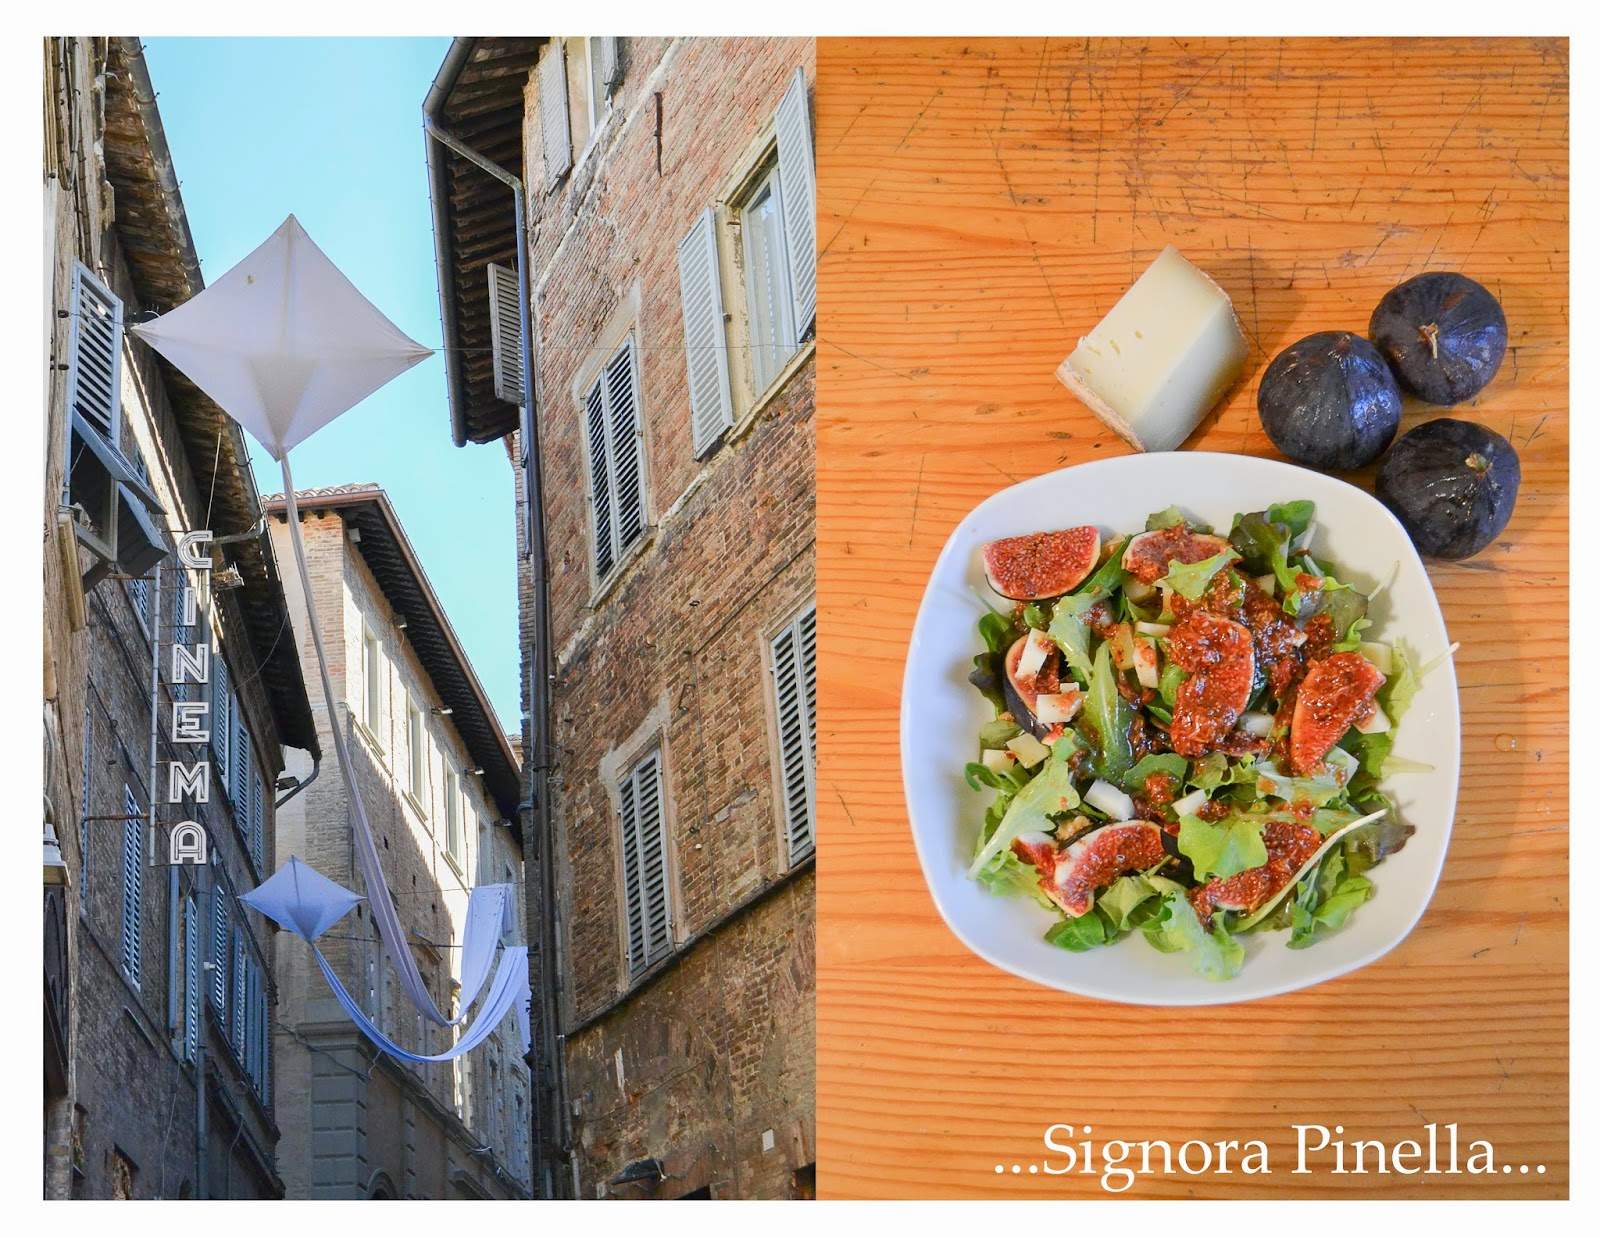 Addio Urbino und San Marino und herzlich willkommen leckerer Feigen-Pecorino-Salat… (Sep 30, 2014)